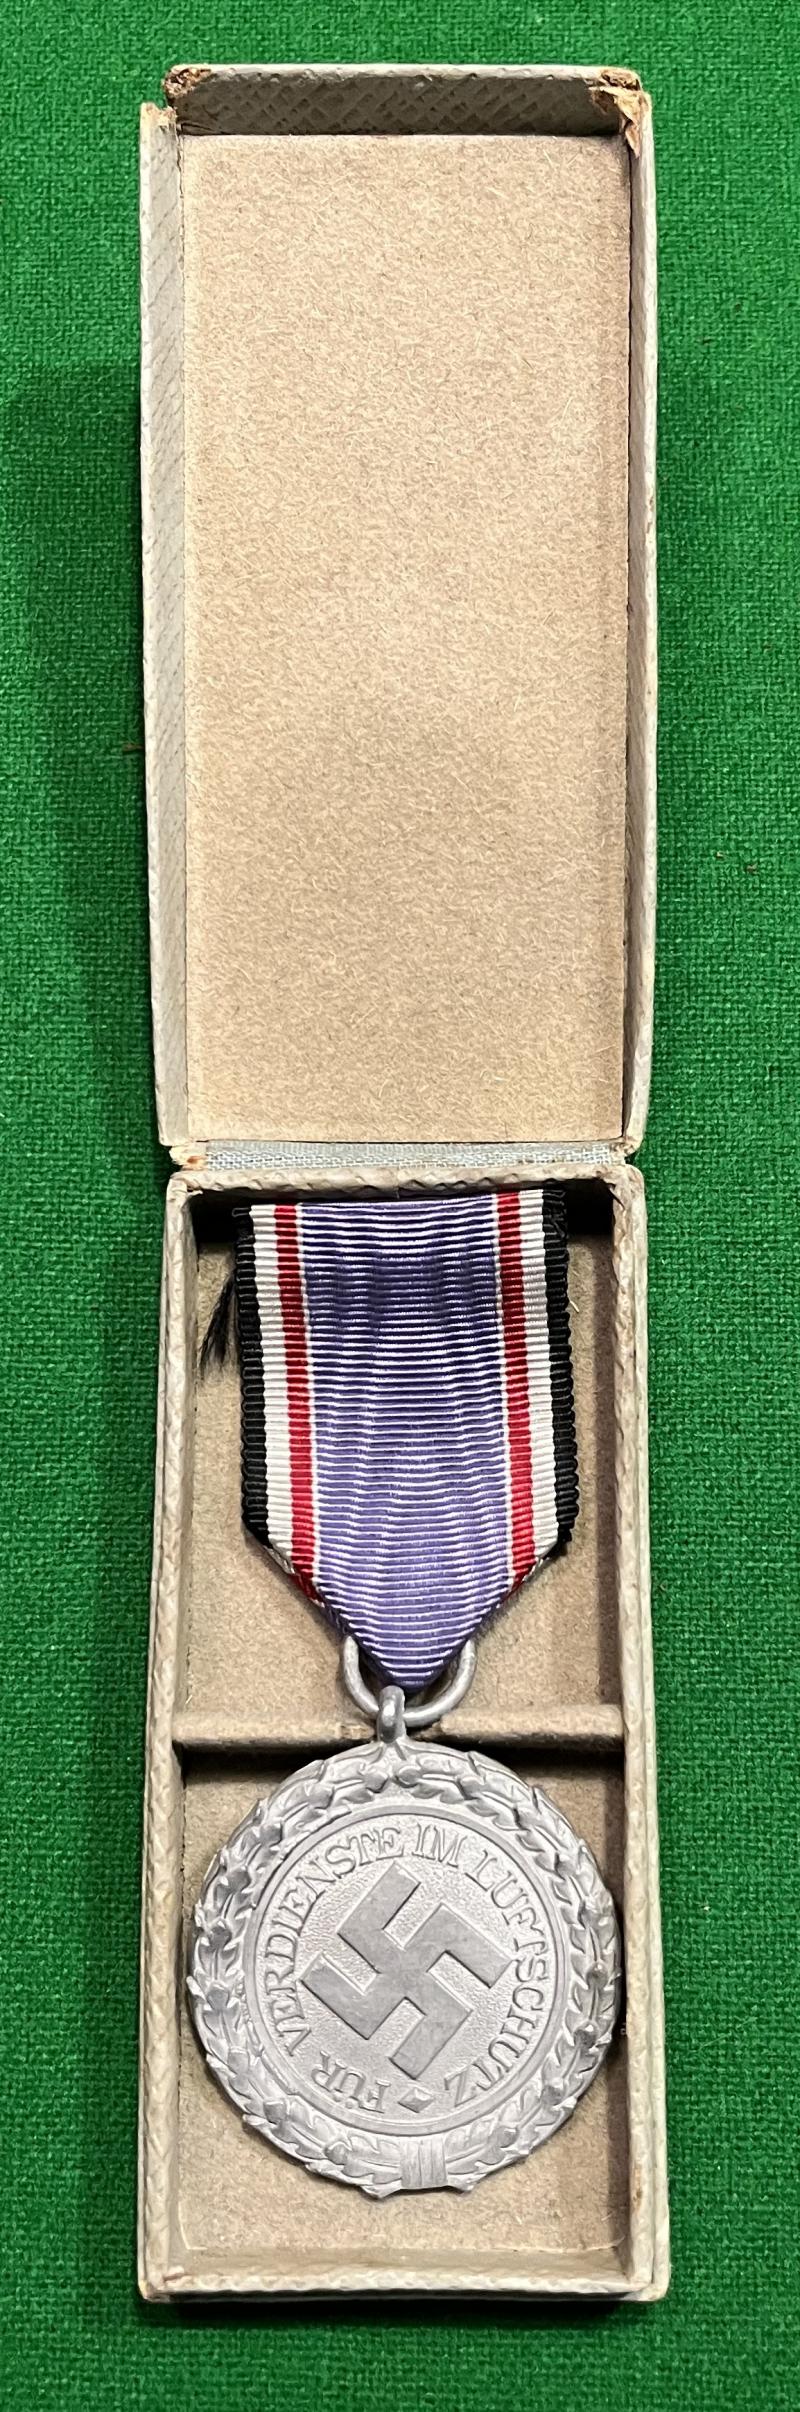 Luftschutz Medal, 2nd Class Cased .